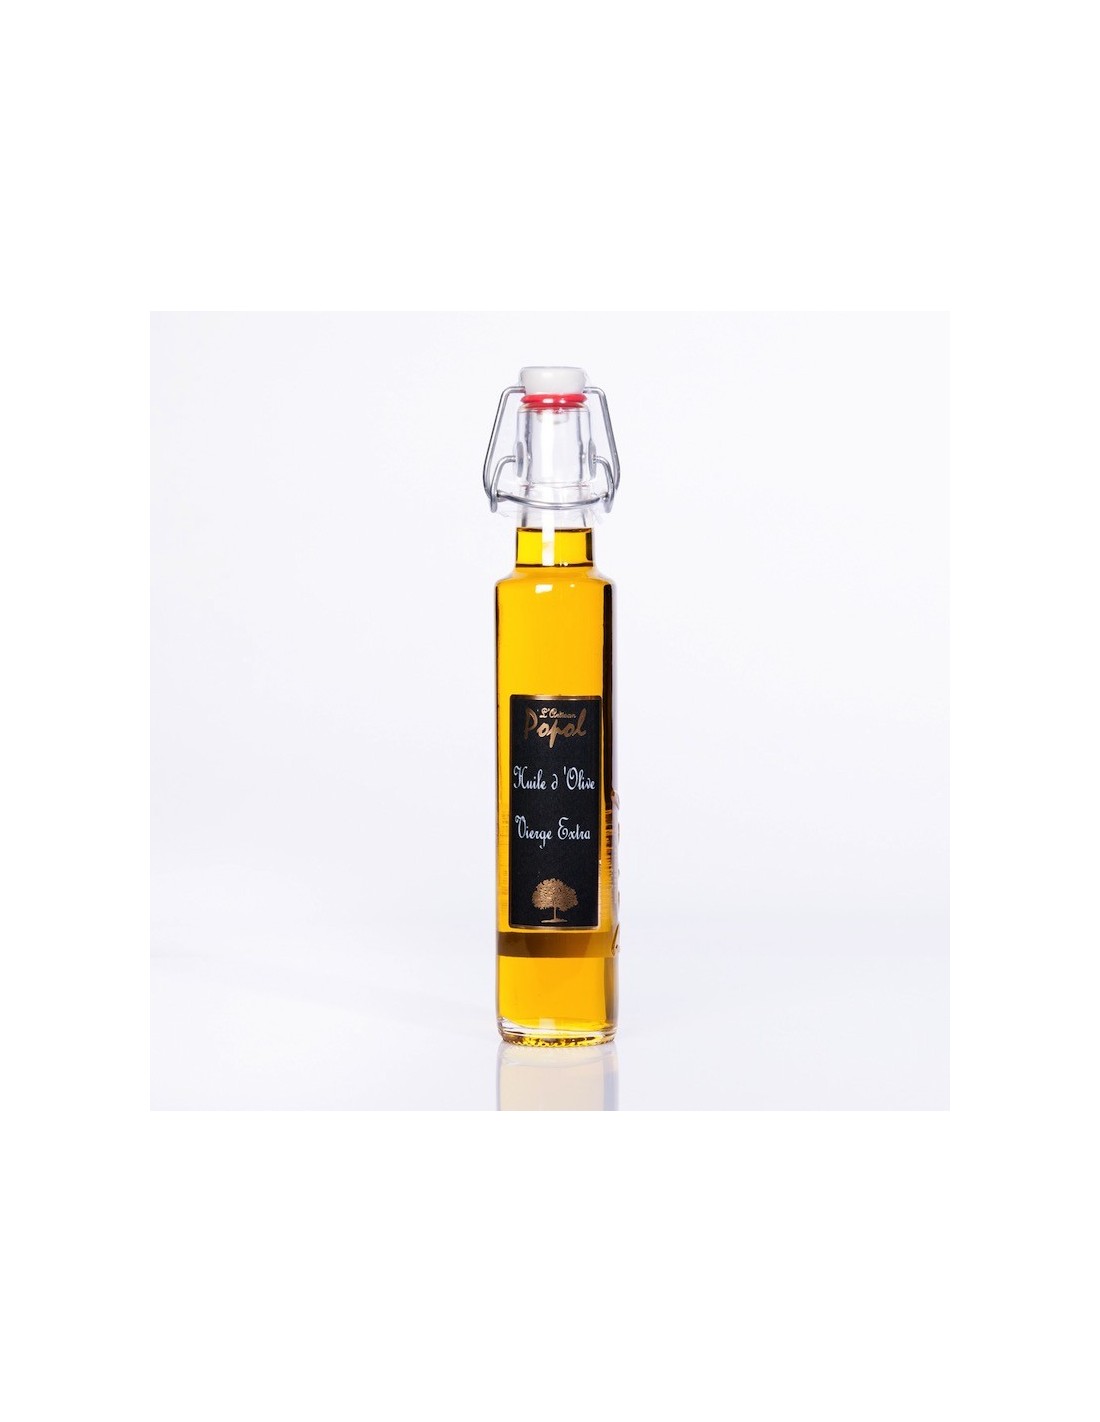 Huile d'olive - Achat d'huile d'olive fuité, intense - Spray 100ml